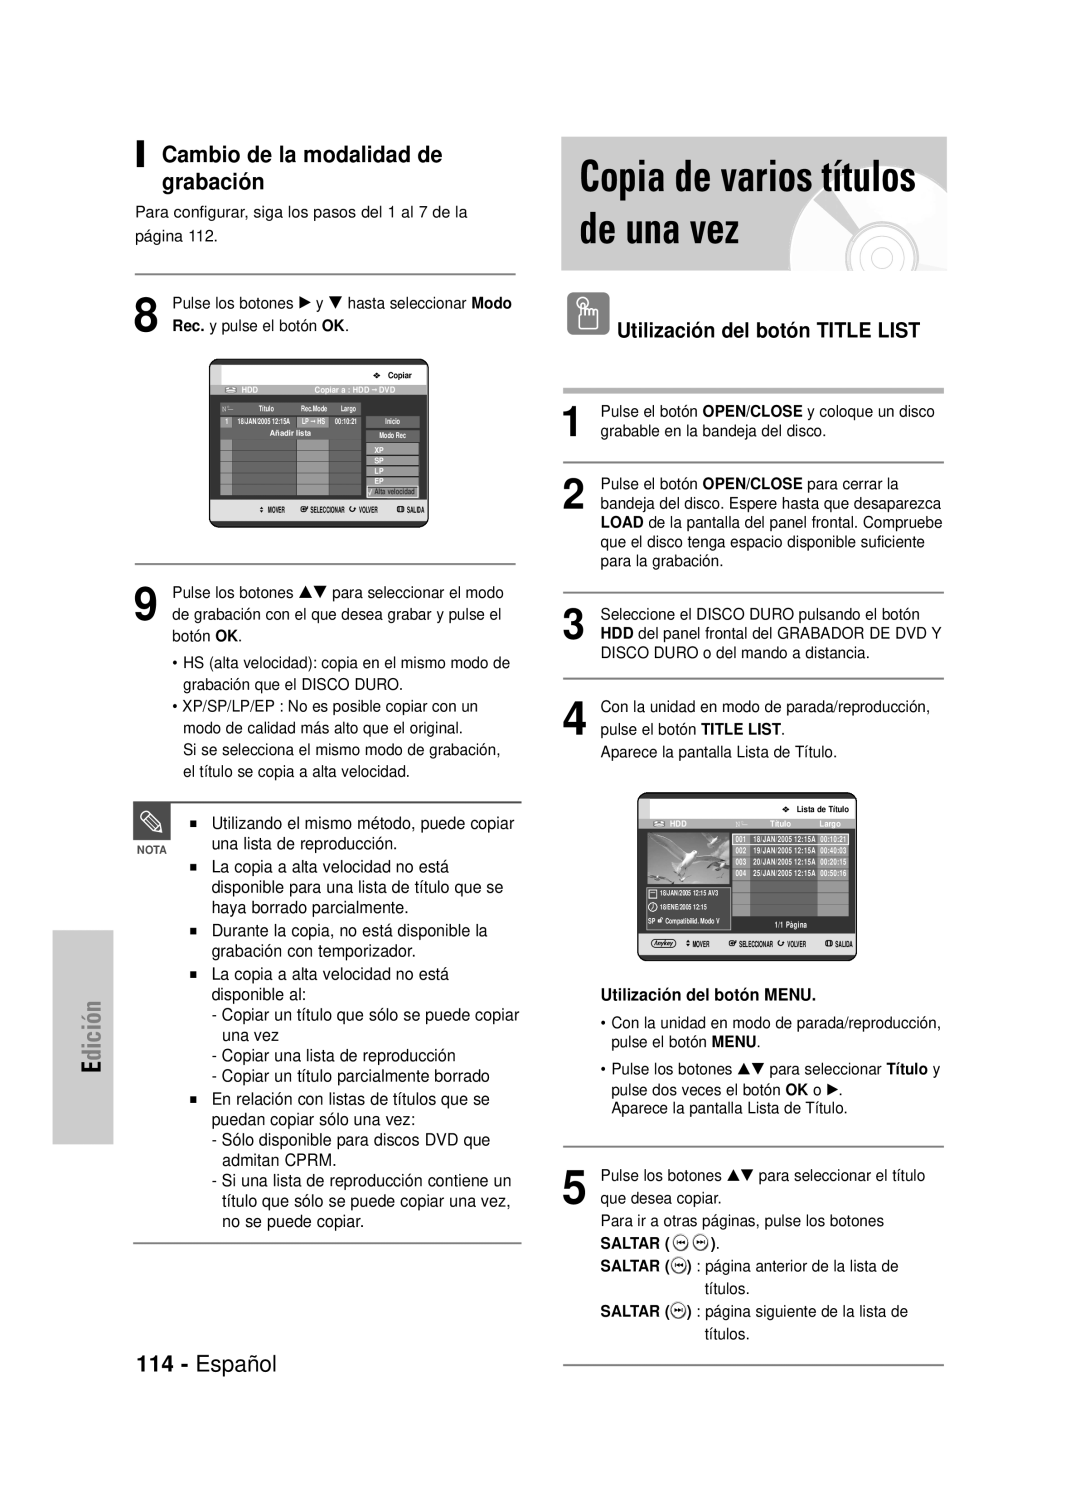 Samsung DVD-HR725/SED manual Copia de varios títulos de una vez, dición, Cambio de la modalidad de grabación, Español 